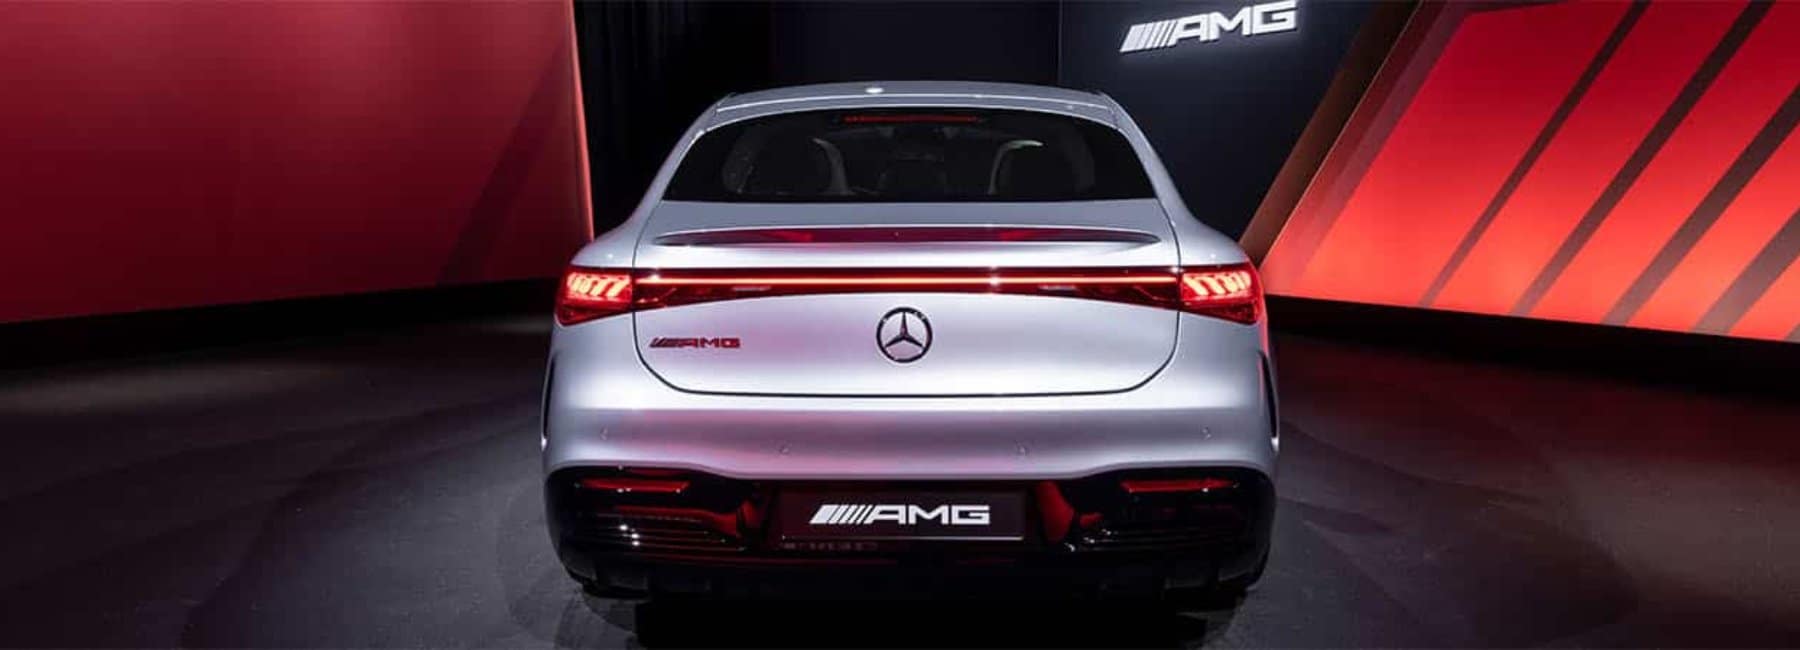 2022amg_esq_sedan-rearview-red-lighting-silver